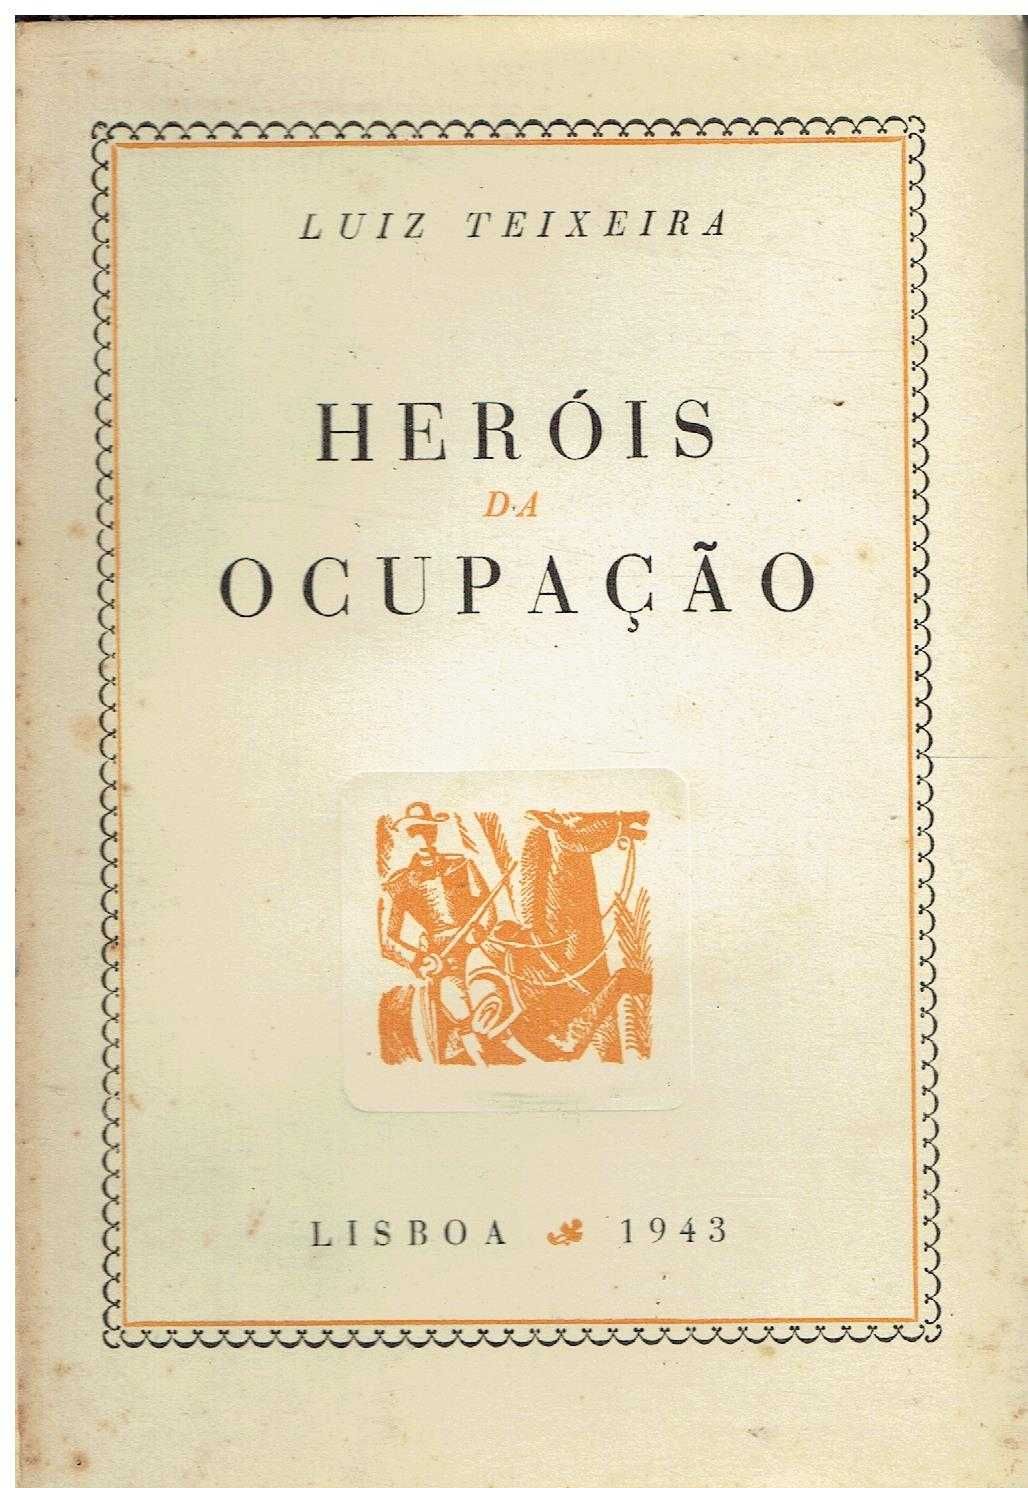 13999
	
Heróis da ocupação 
de Luís Teixeira.